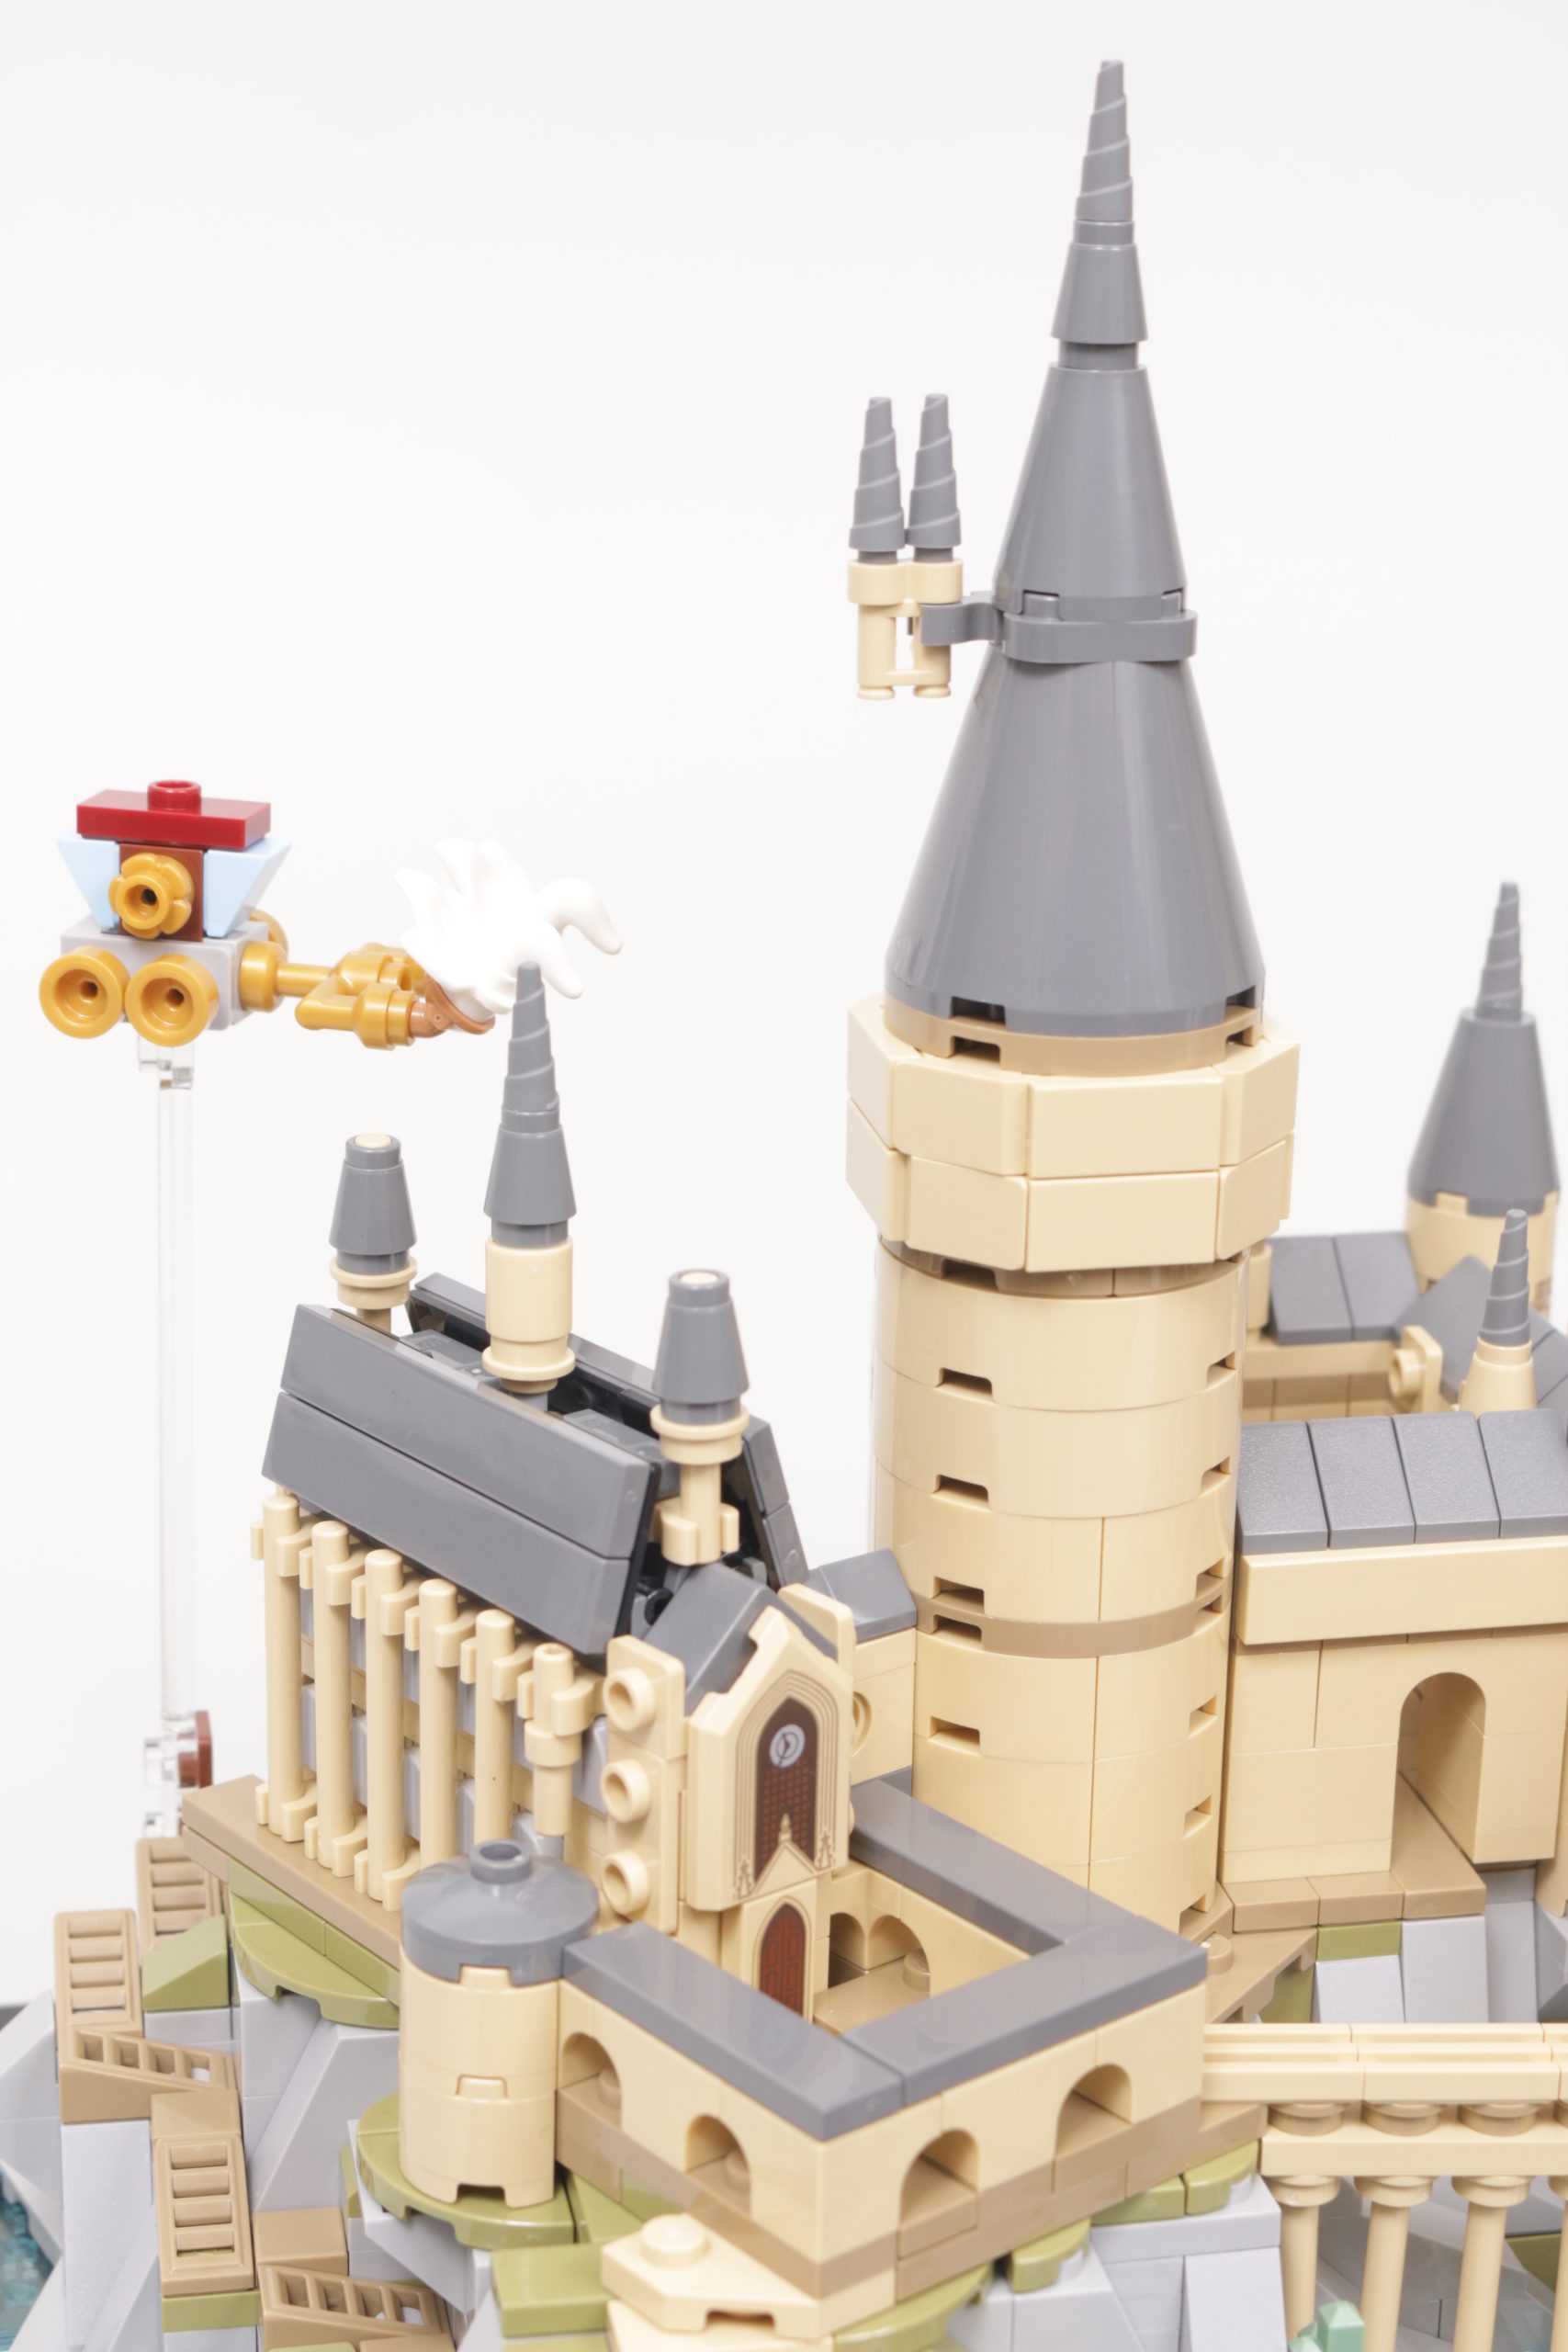 Lego Harry Potter 76419 HogwartRevisão do castelo e dos terrenos